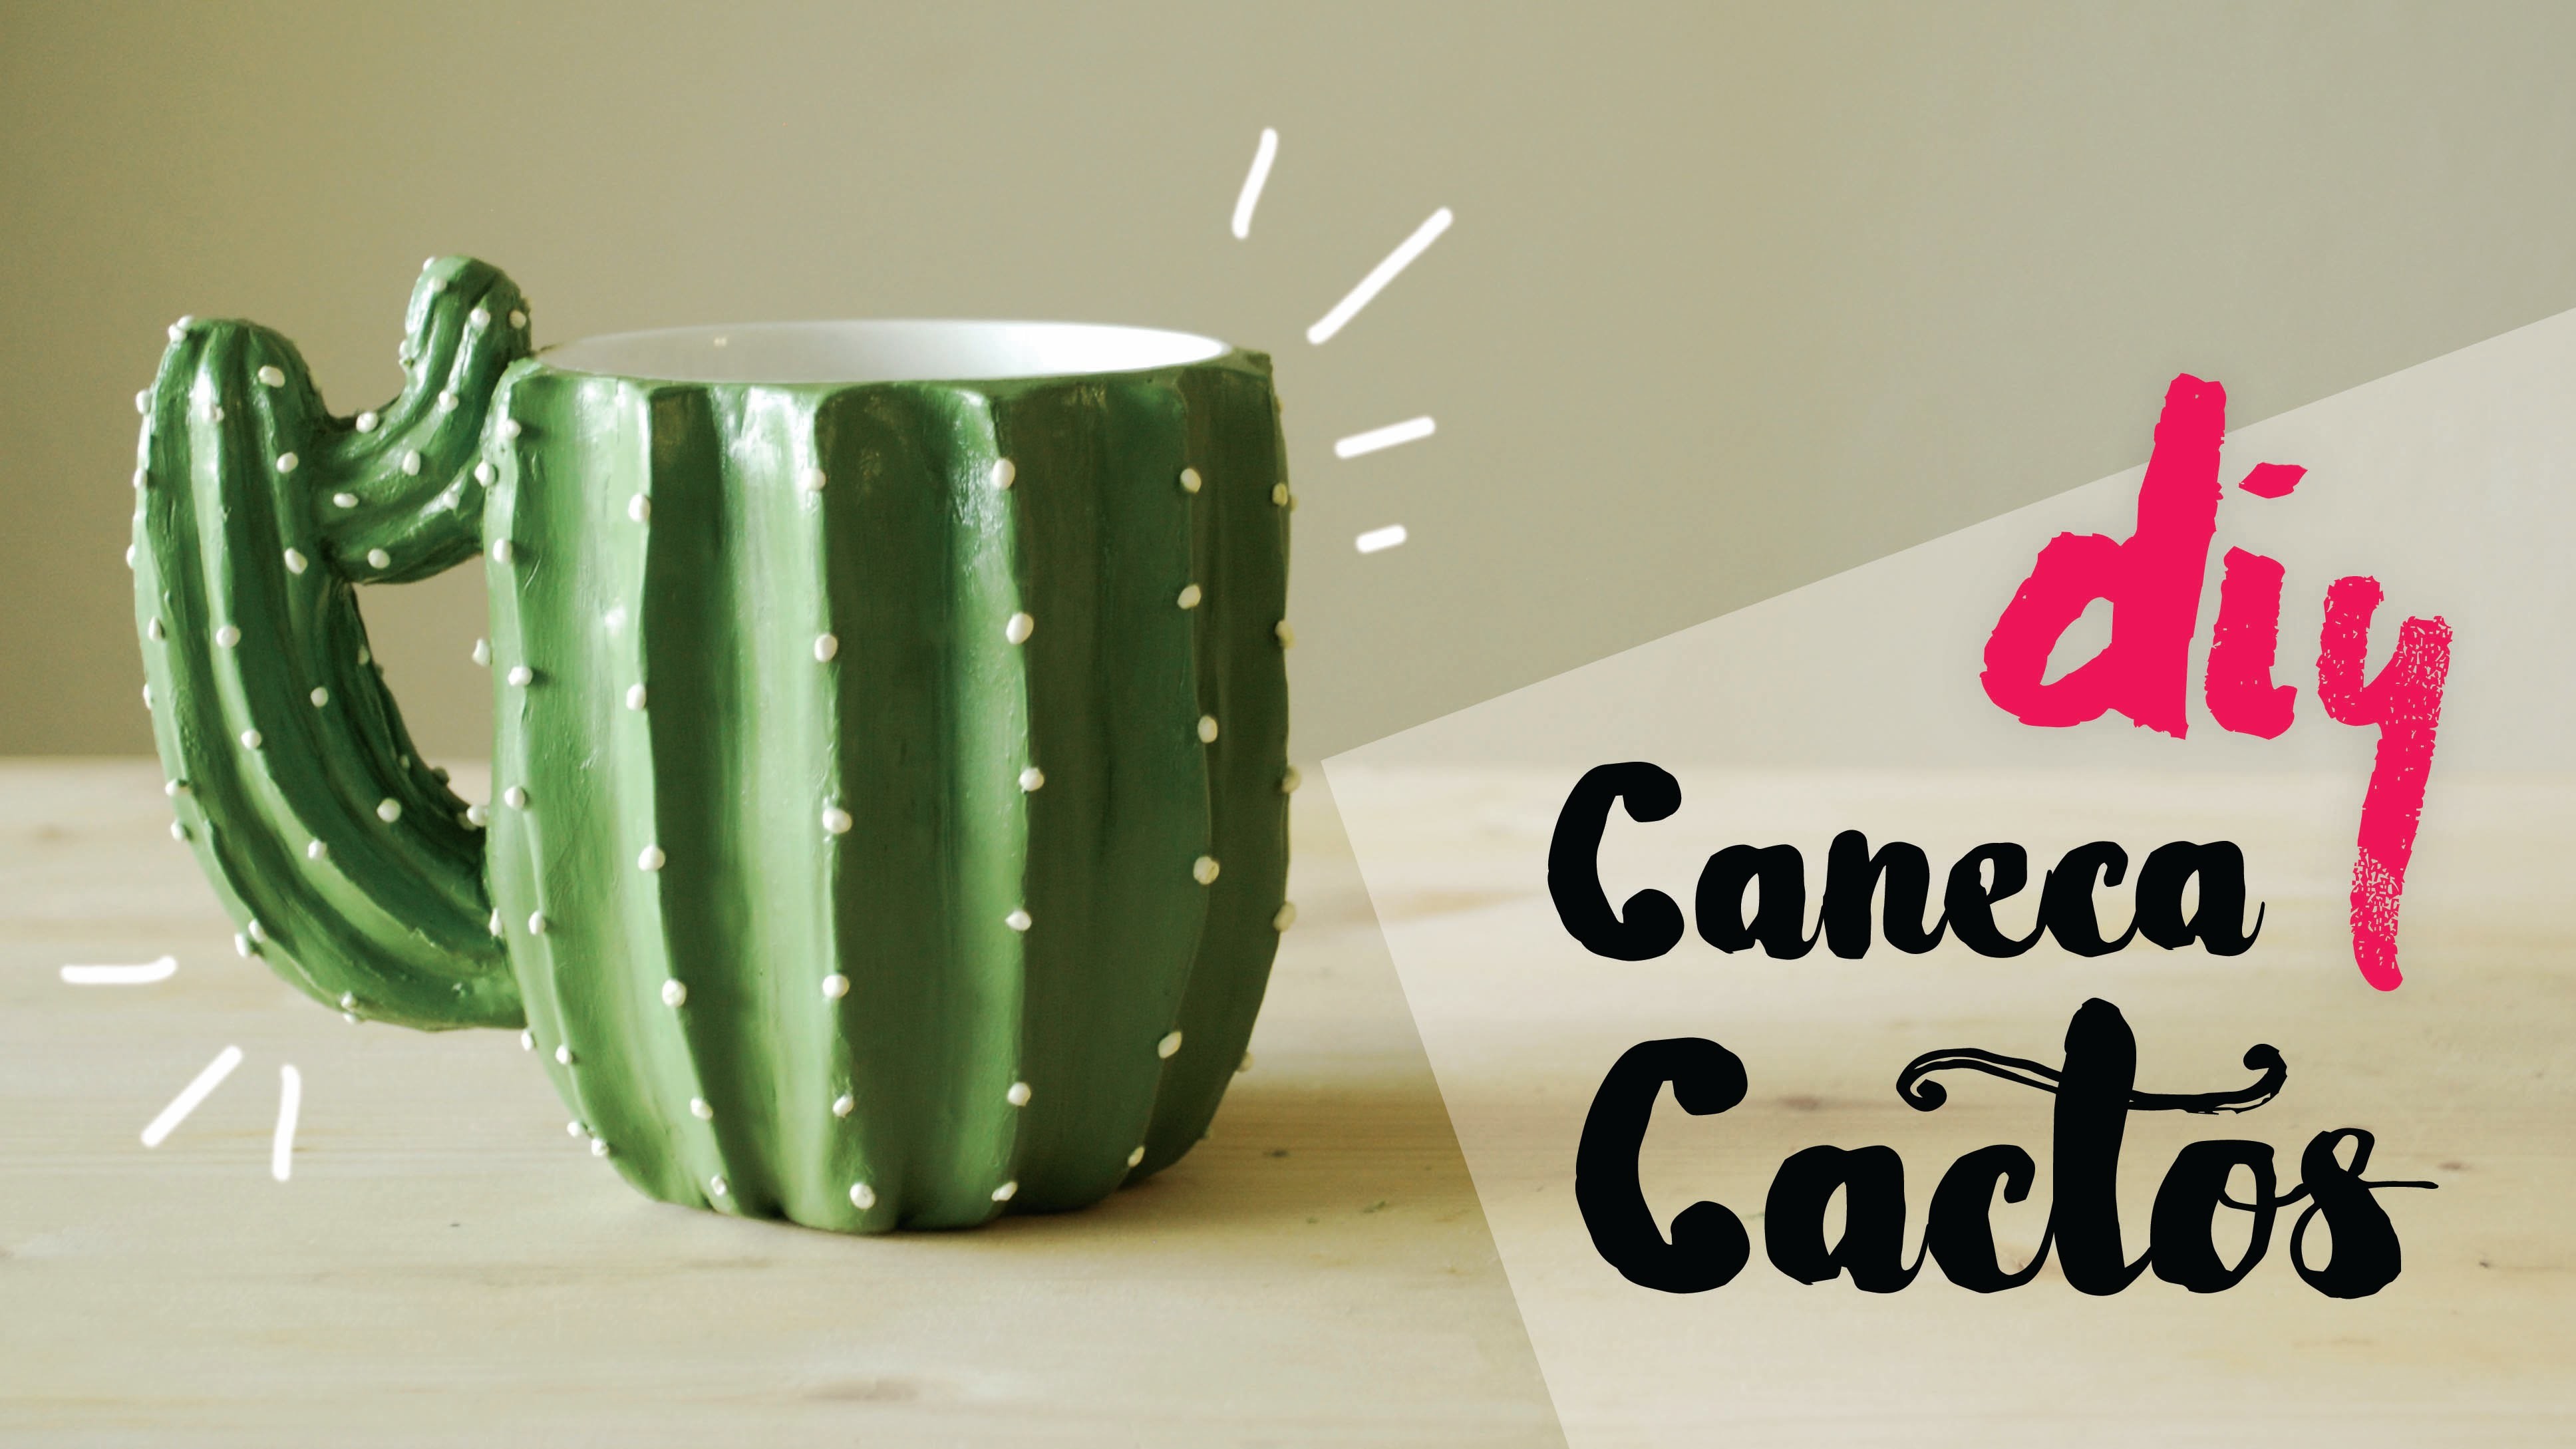 DIY: Caneca Cactos (Cactus Mug) por Isabelle Verona